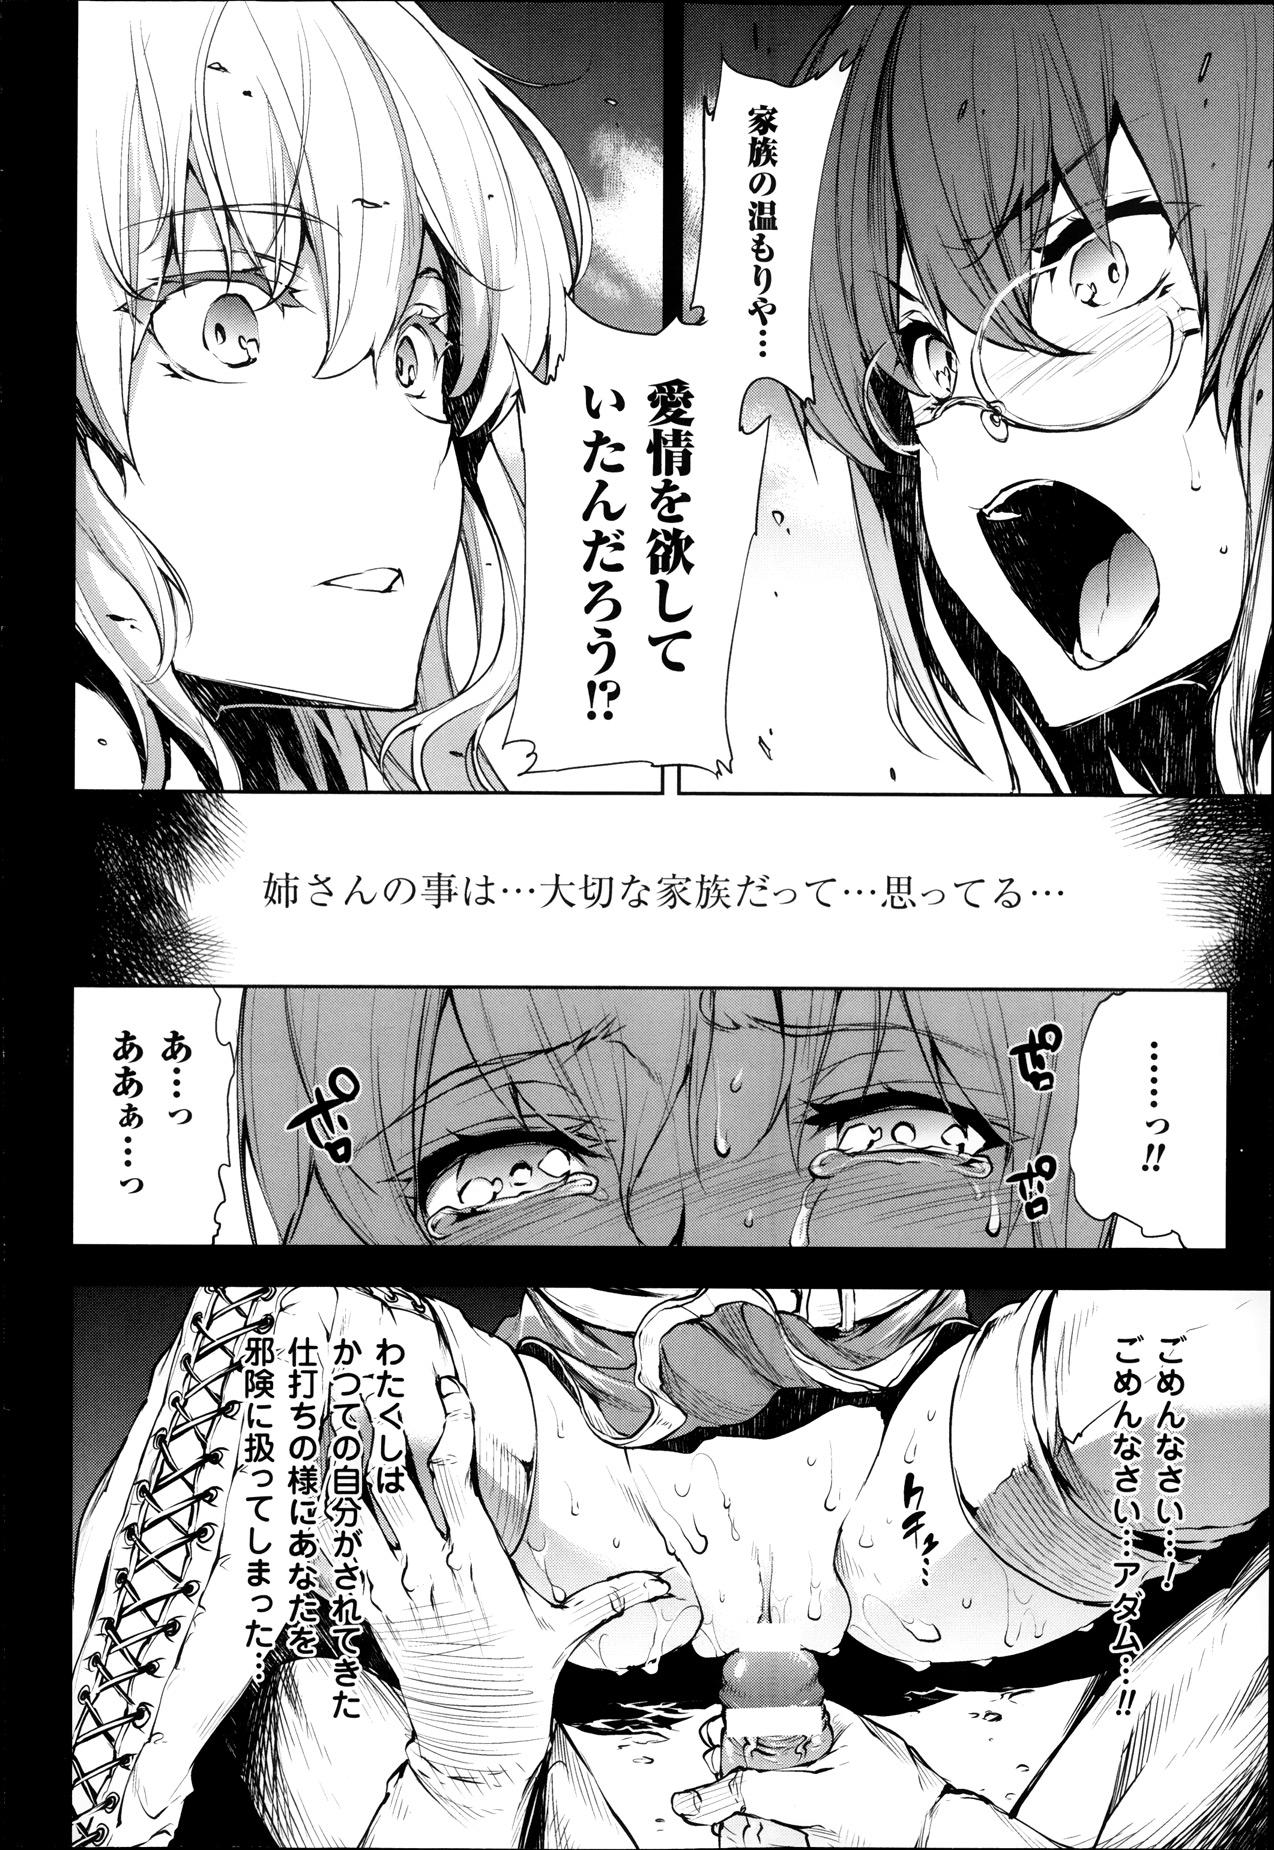 [Erect Sawaru] Shinkyoku no Grimoire -PANDRA saga 2nd story- Ch. 7-12 75